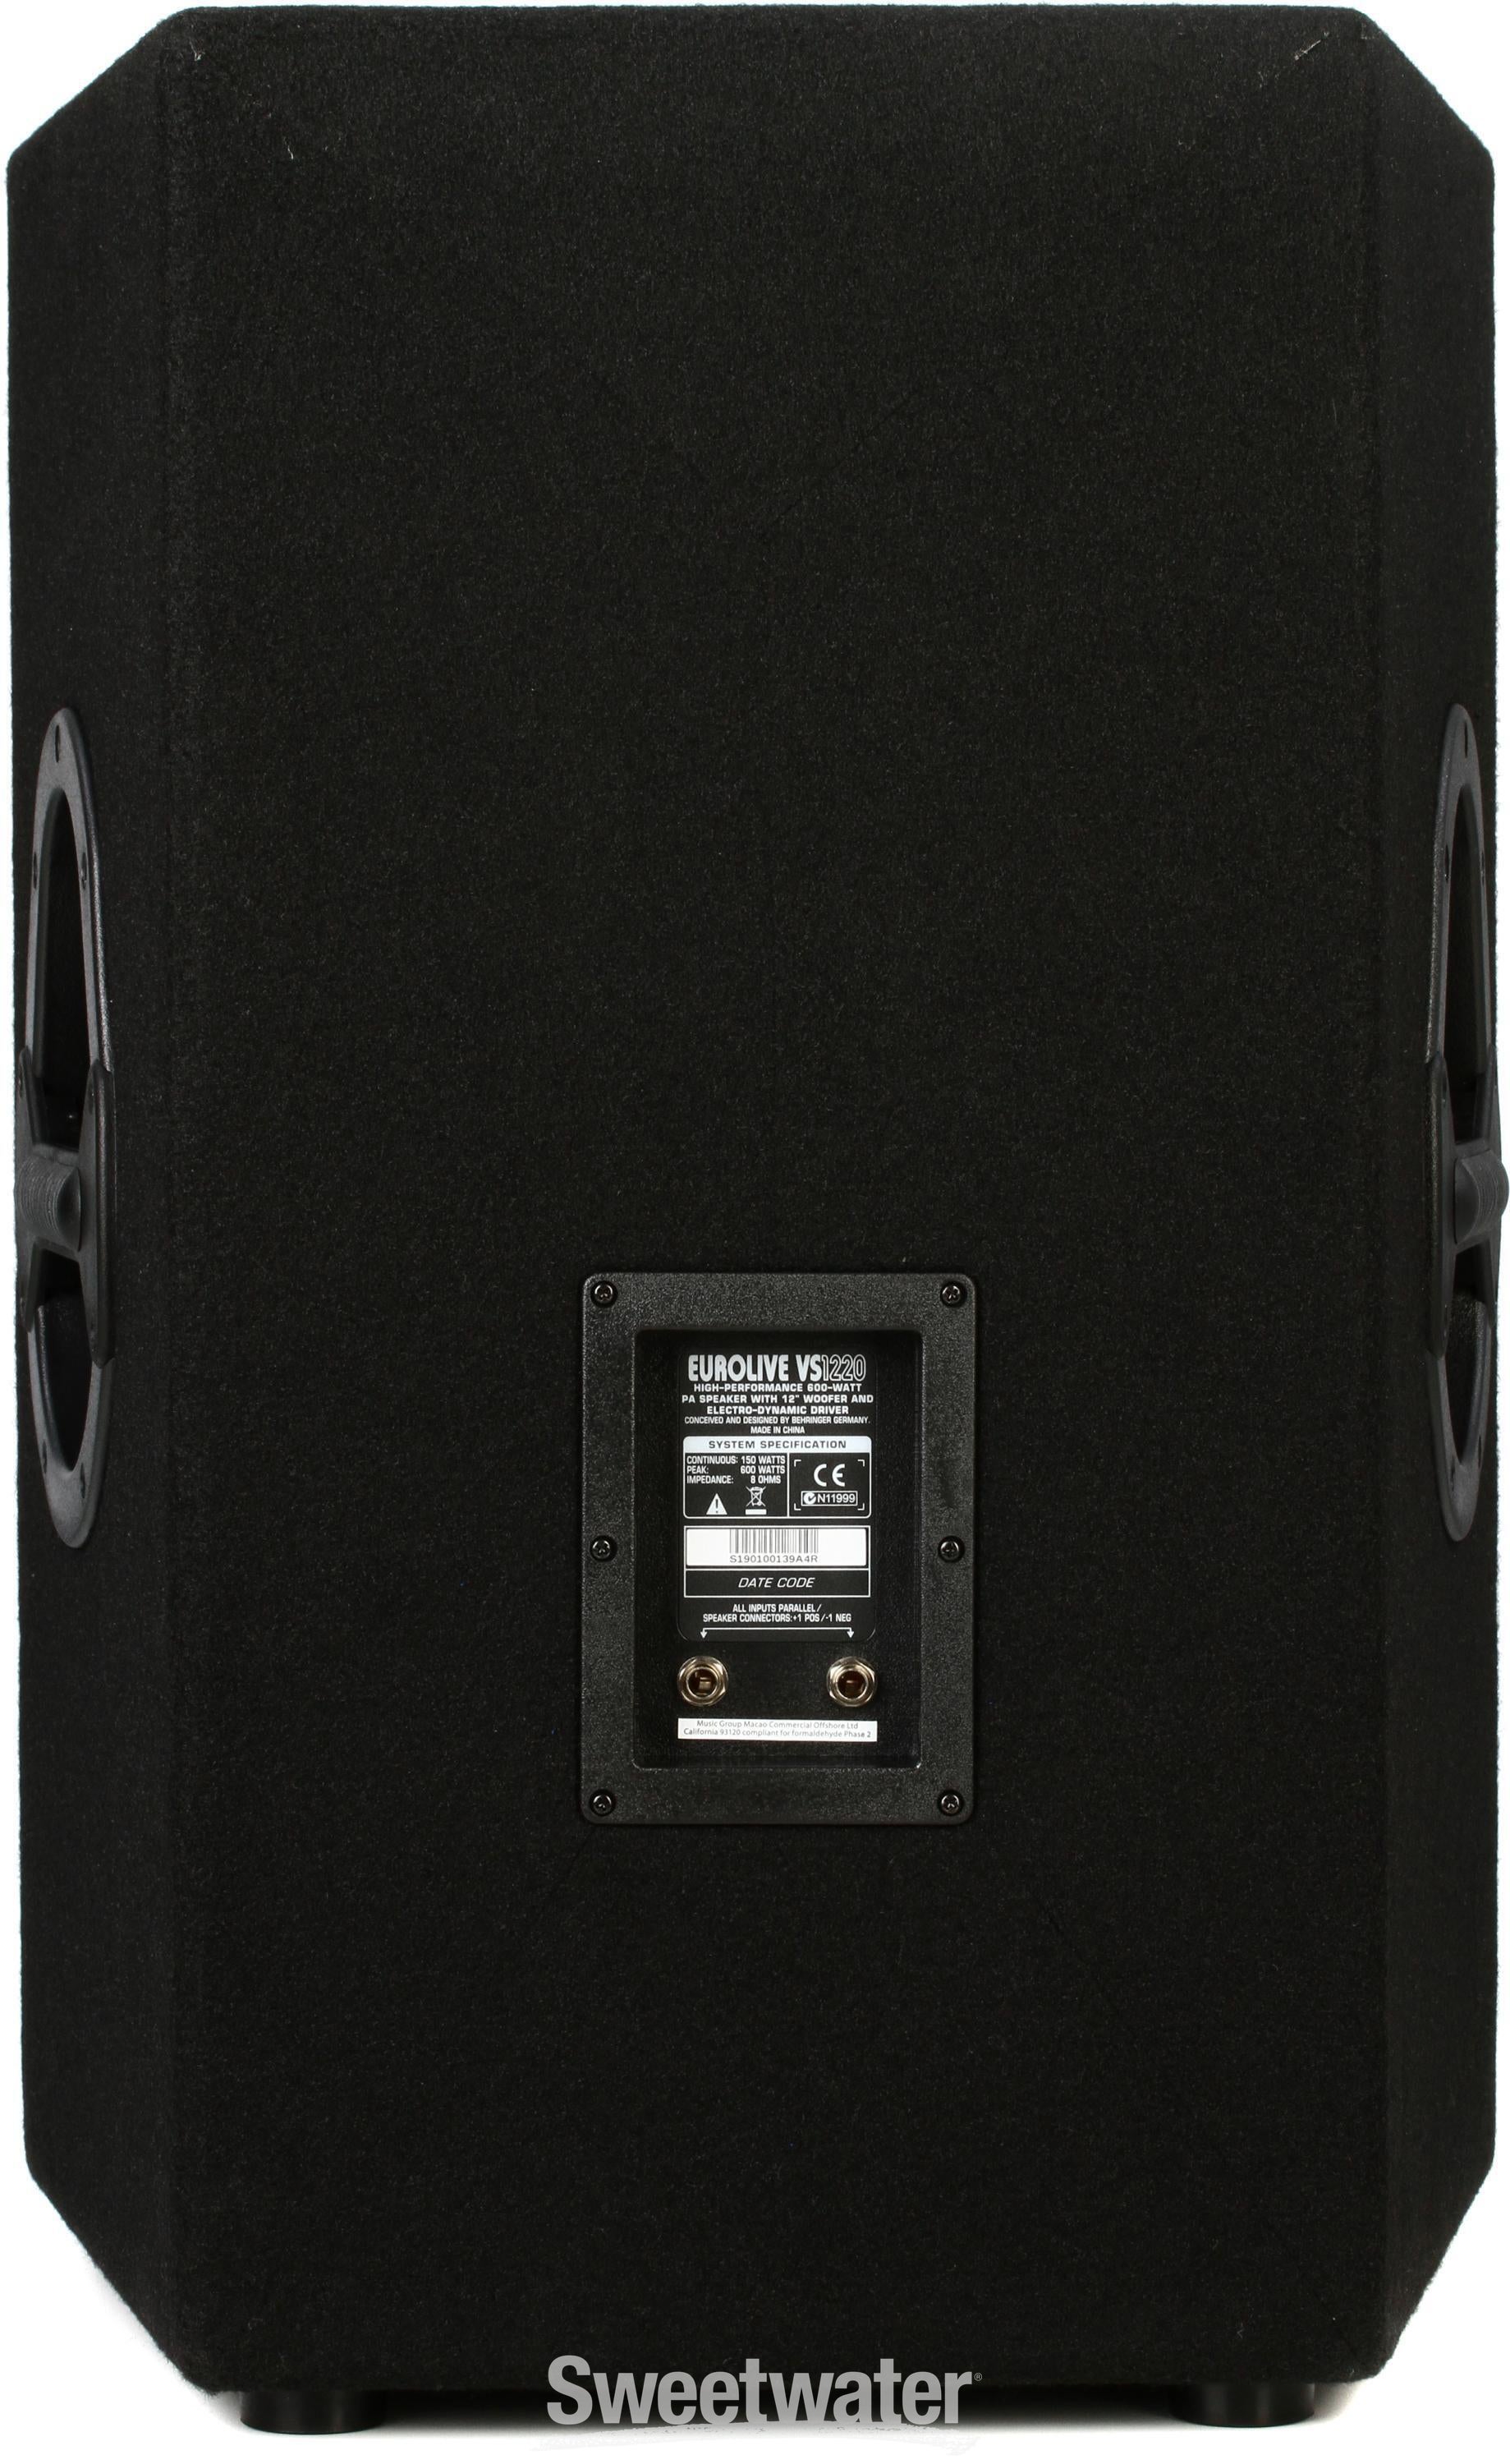 Behringer VS1220 600W 12 inch Passive Speaker